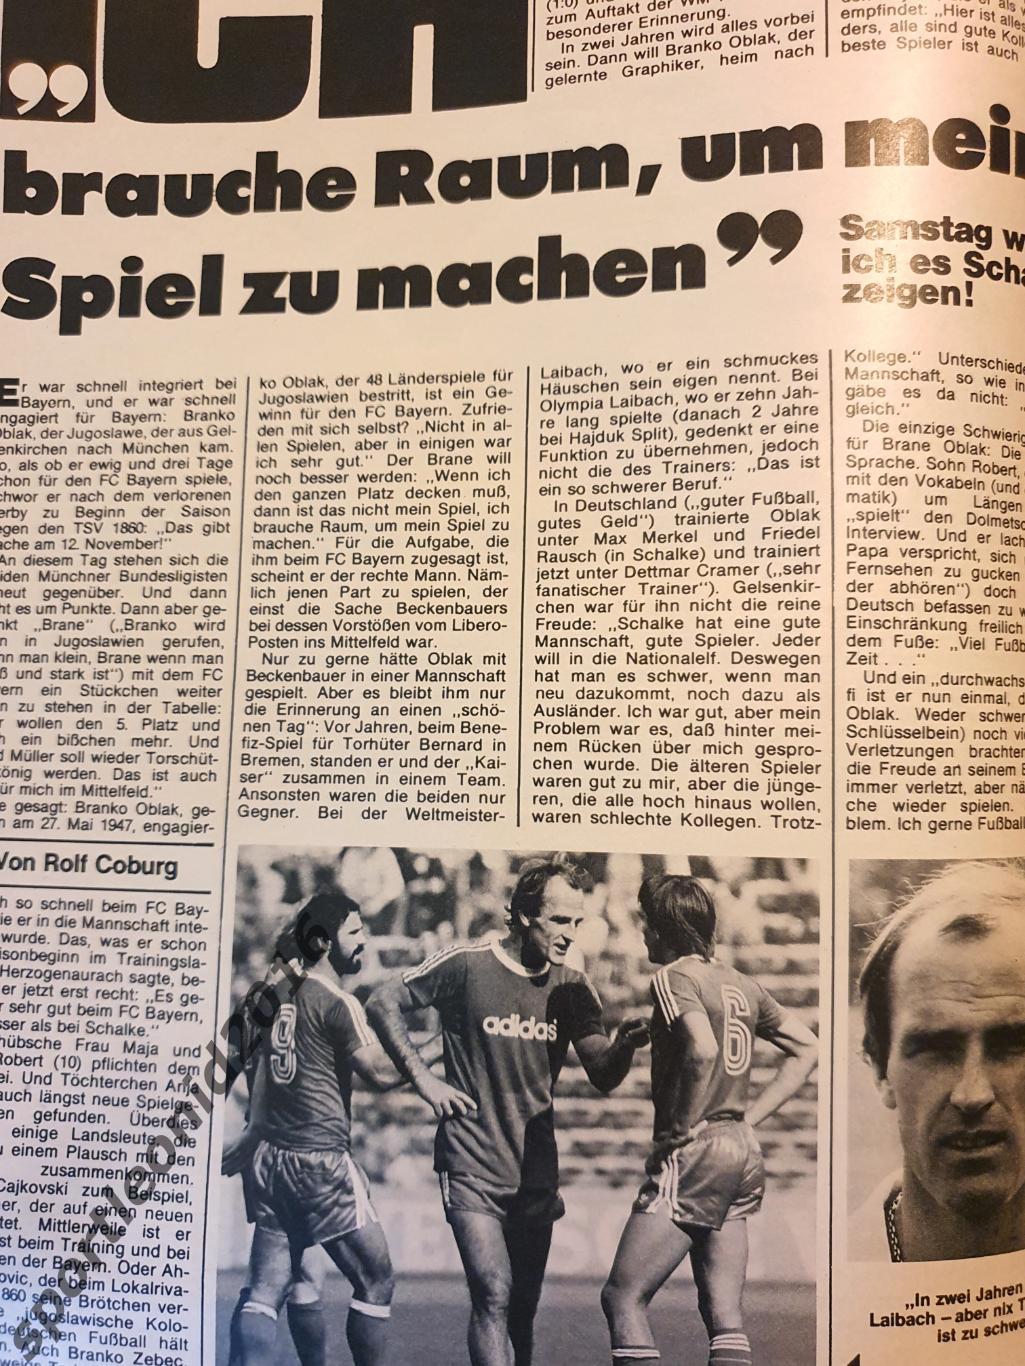 Fussball Woche-39/1977 4